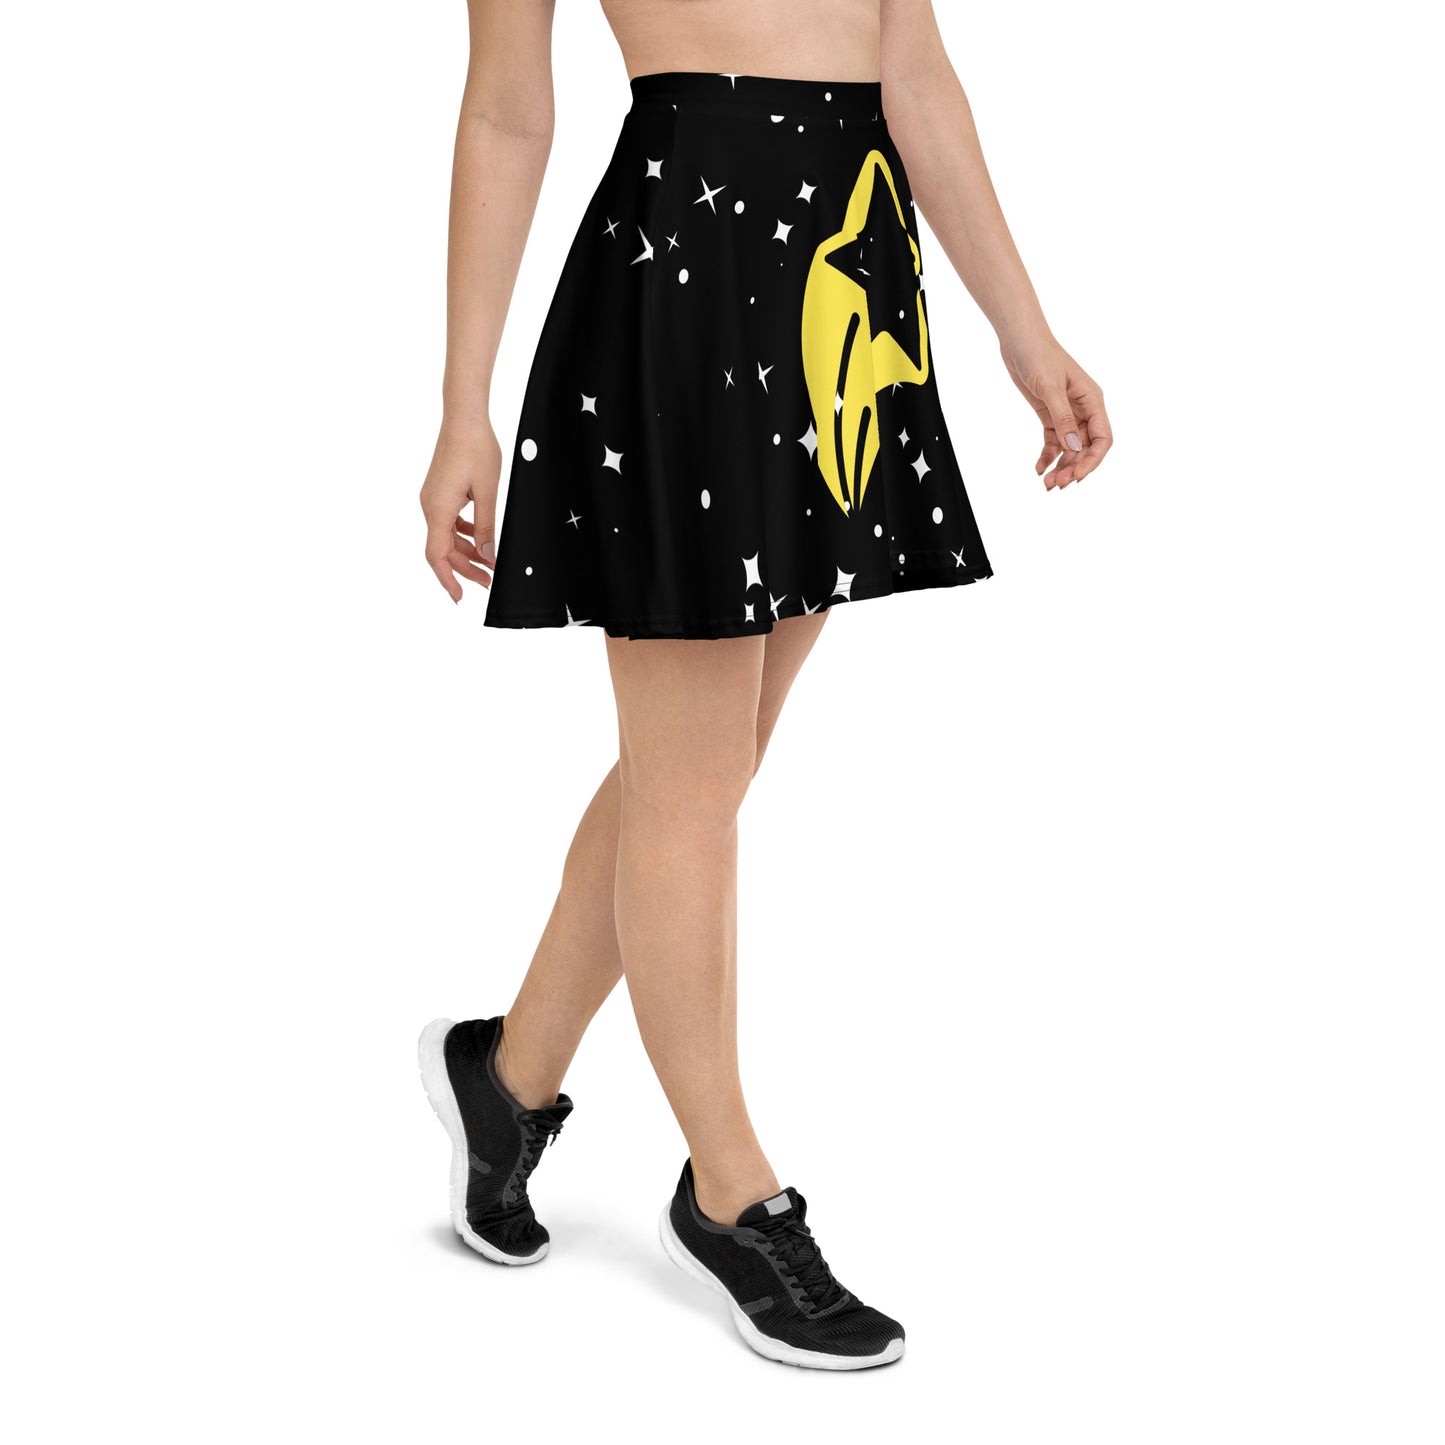 Starry Night Skirt - Skater Skirt - ELLACO